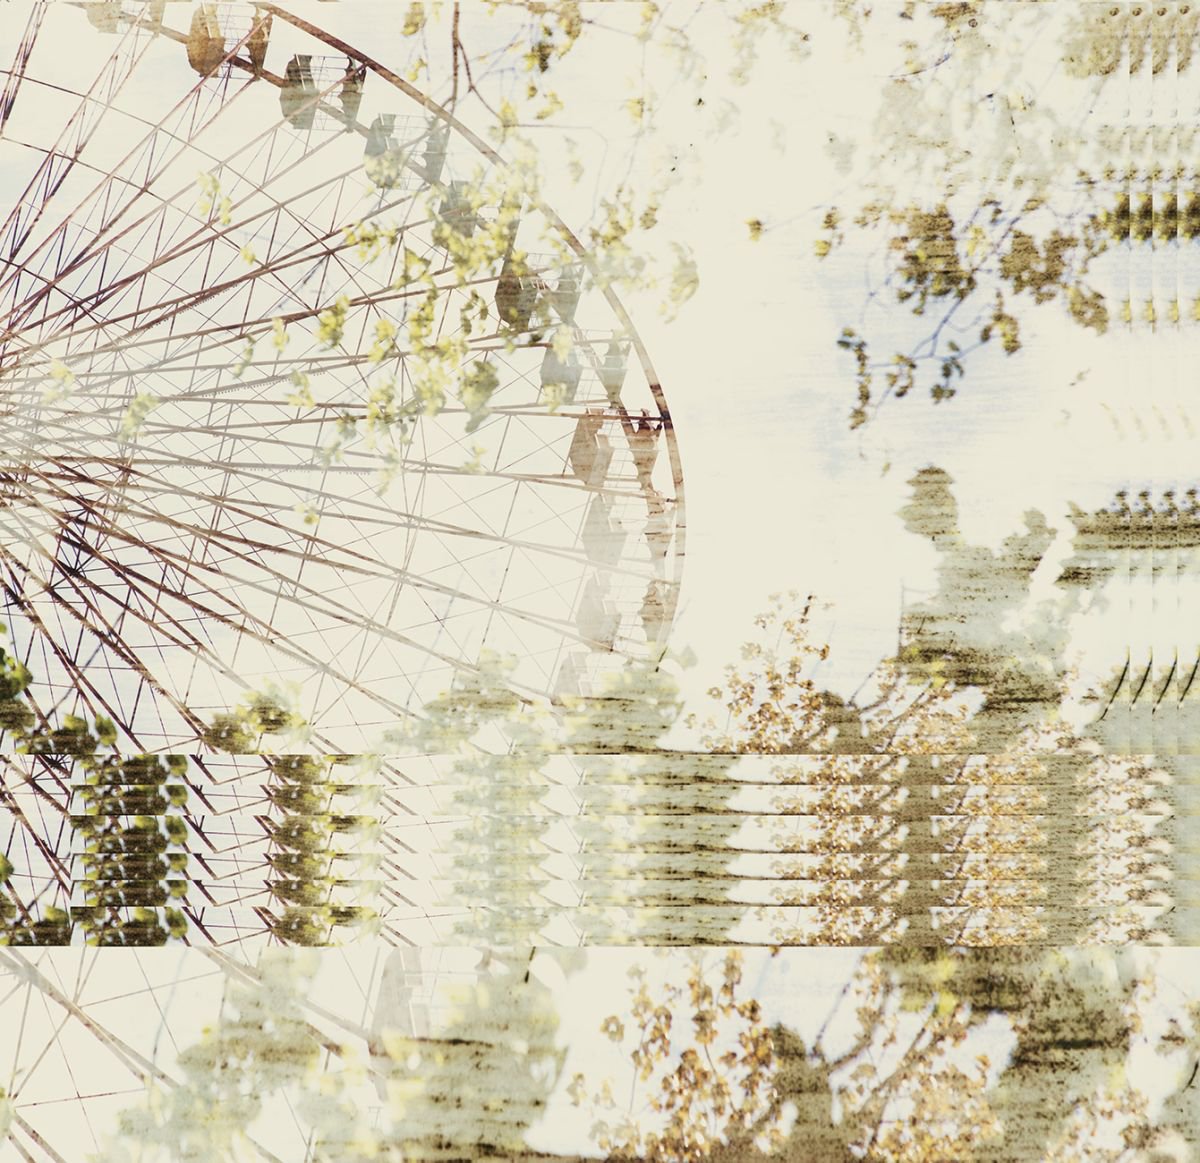 Ferris wheel by Louise O’Gorman